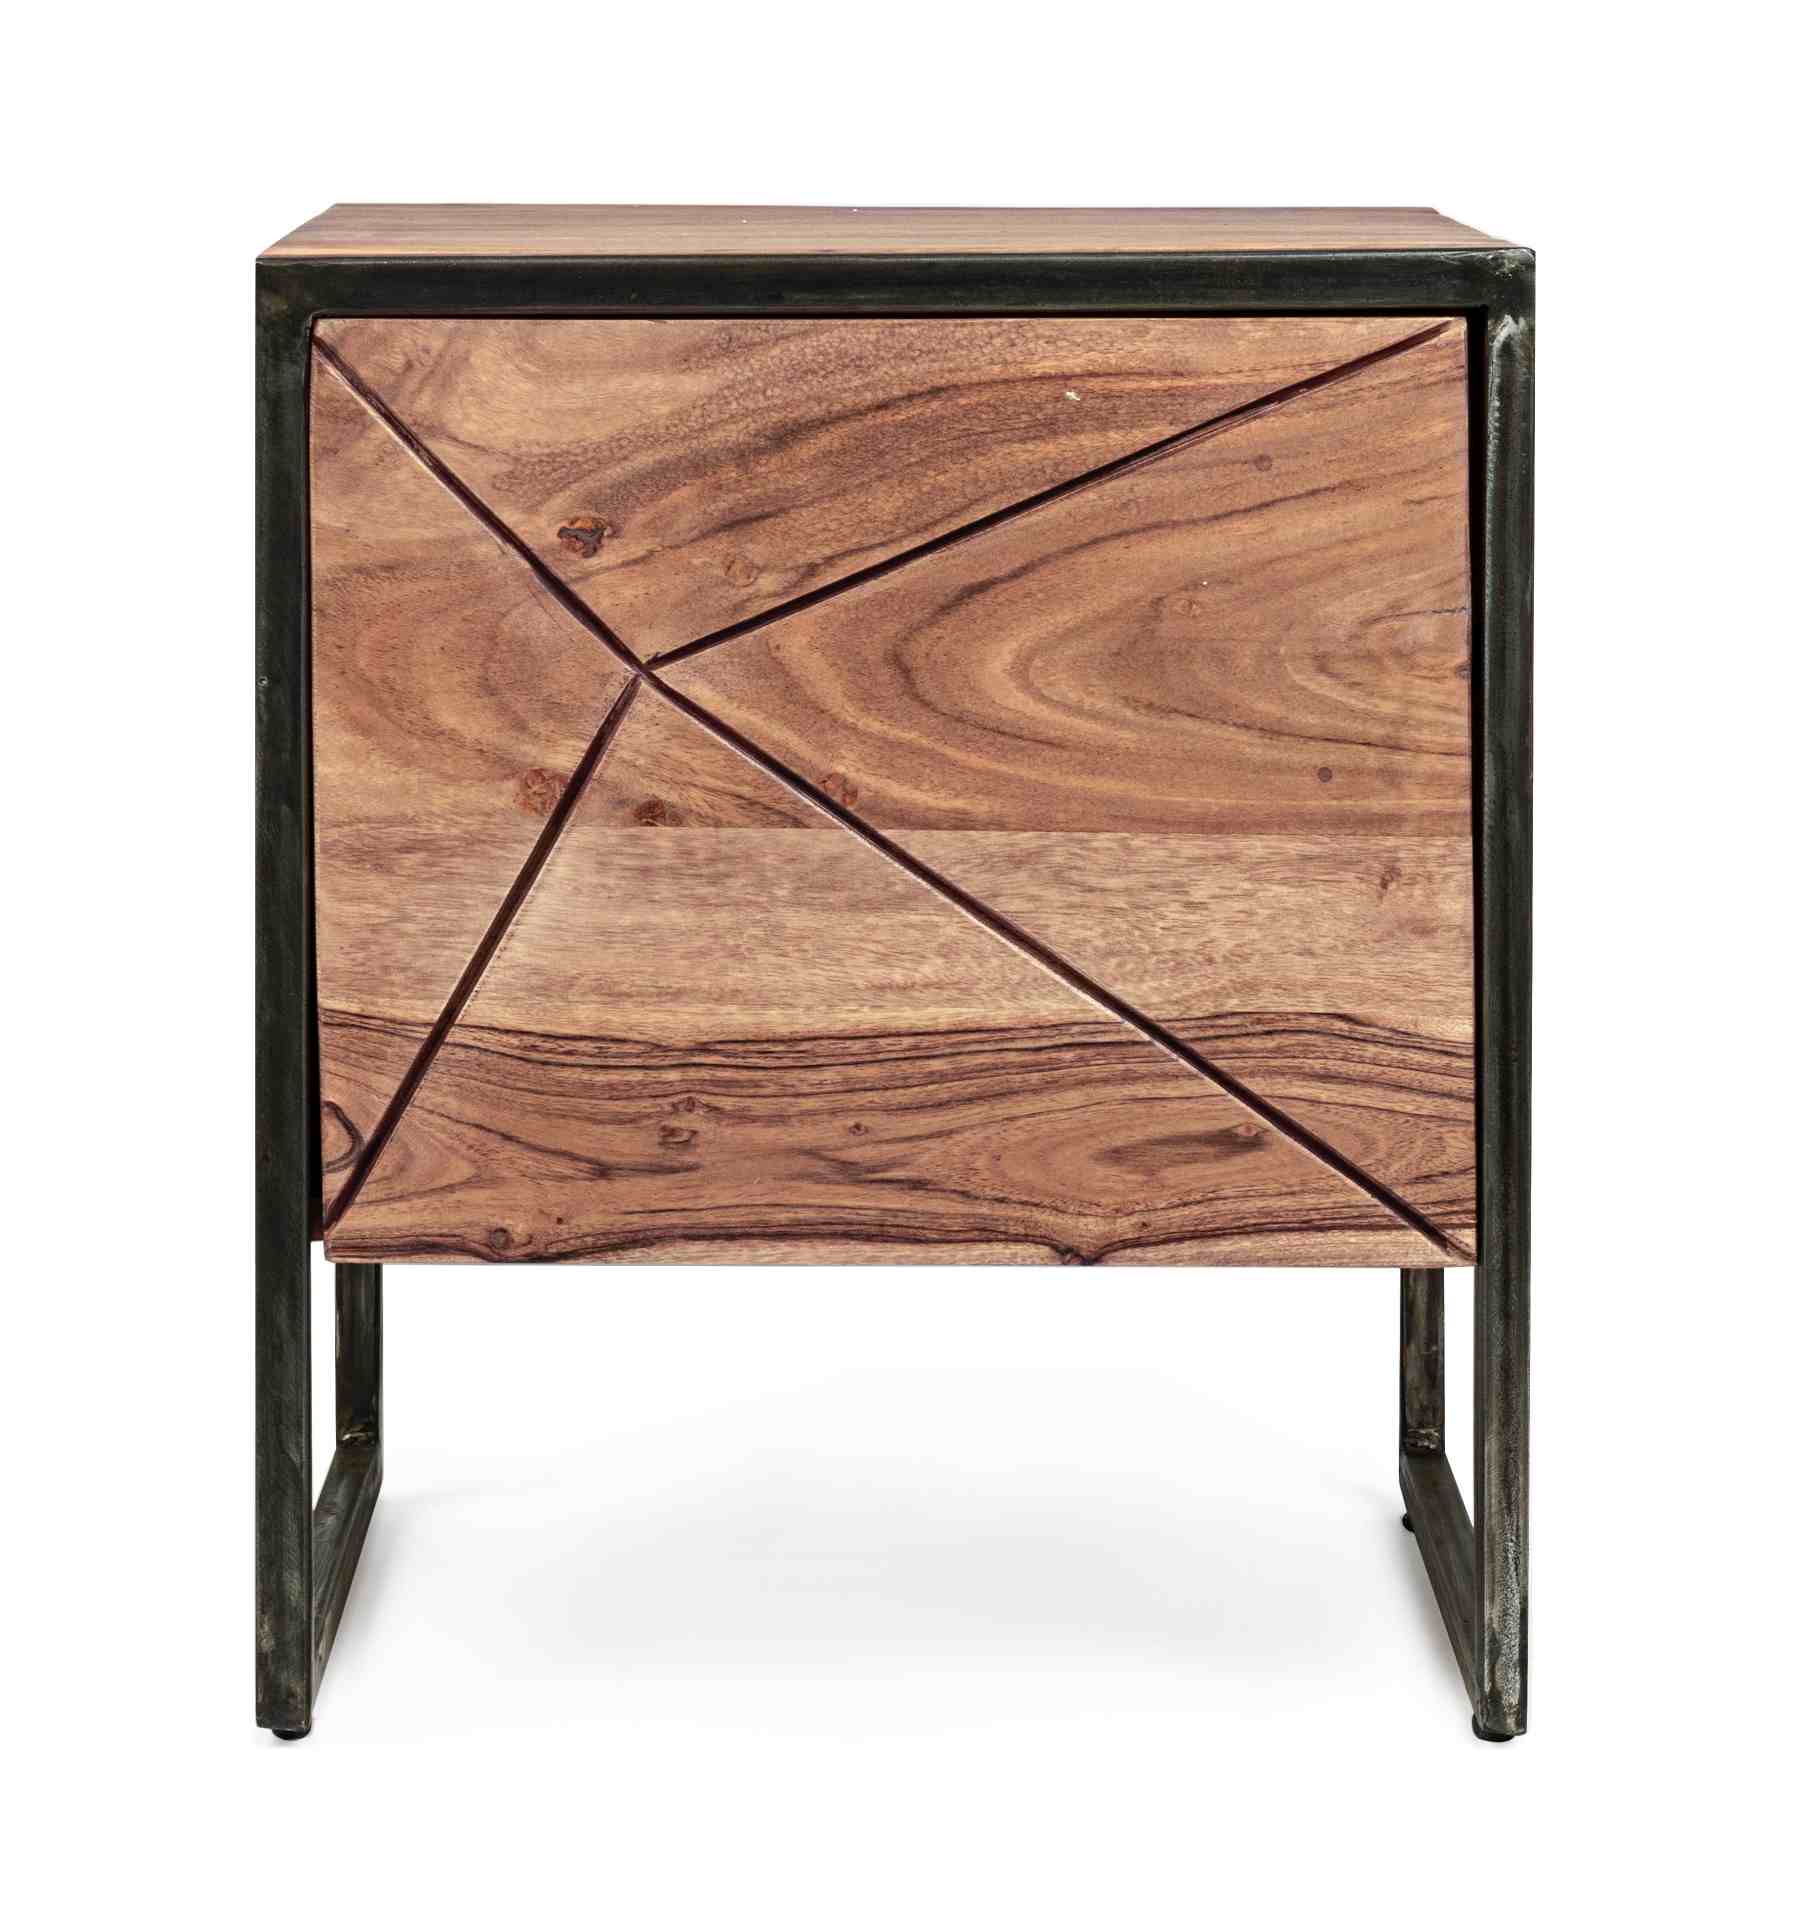 Der Nachttisch Egon überzeugt mit seinem modernen Design. Gefertigt wurde er aus Akazienholz, welches einen natürlichen Farbton besitzt. Das Gestell ist aus Metall und hat eine schwarze Farbe. Der Nachttisch verfügt über eine Tür. Die Breite beträgt 45 cm